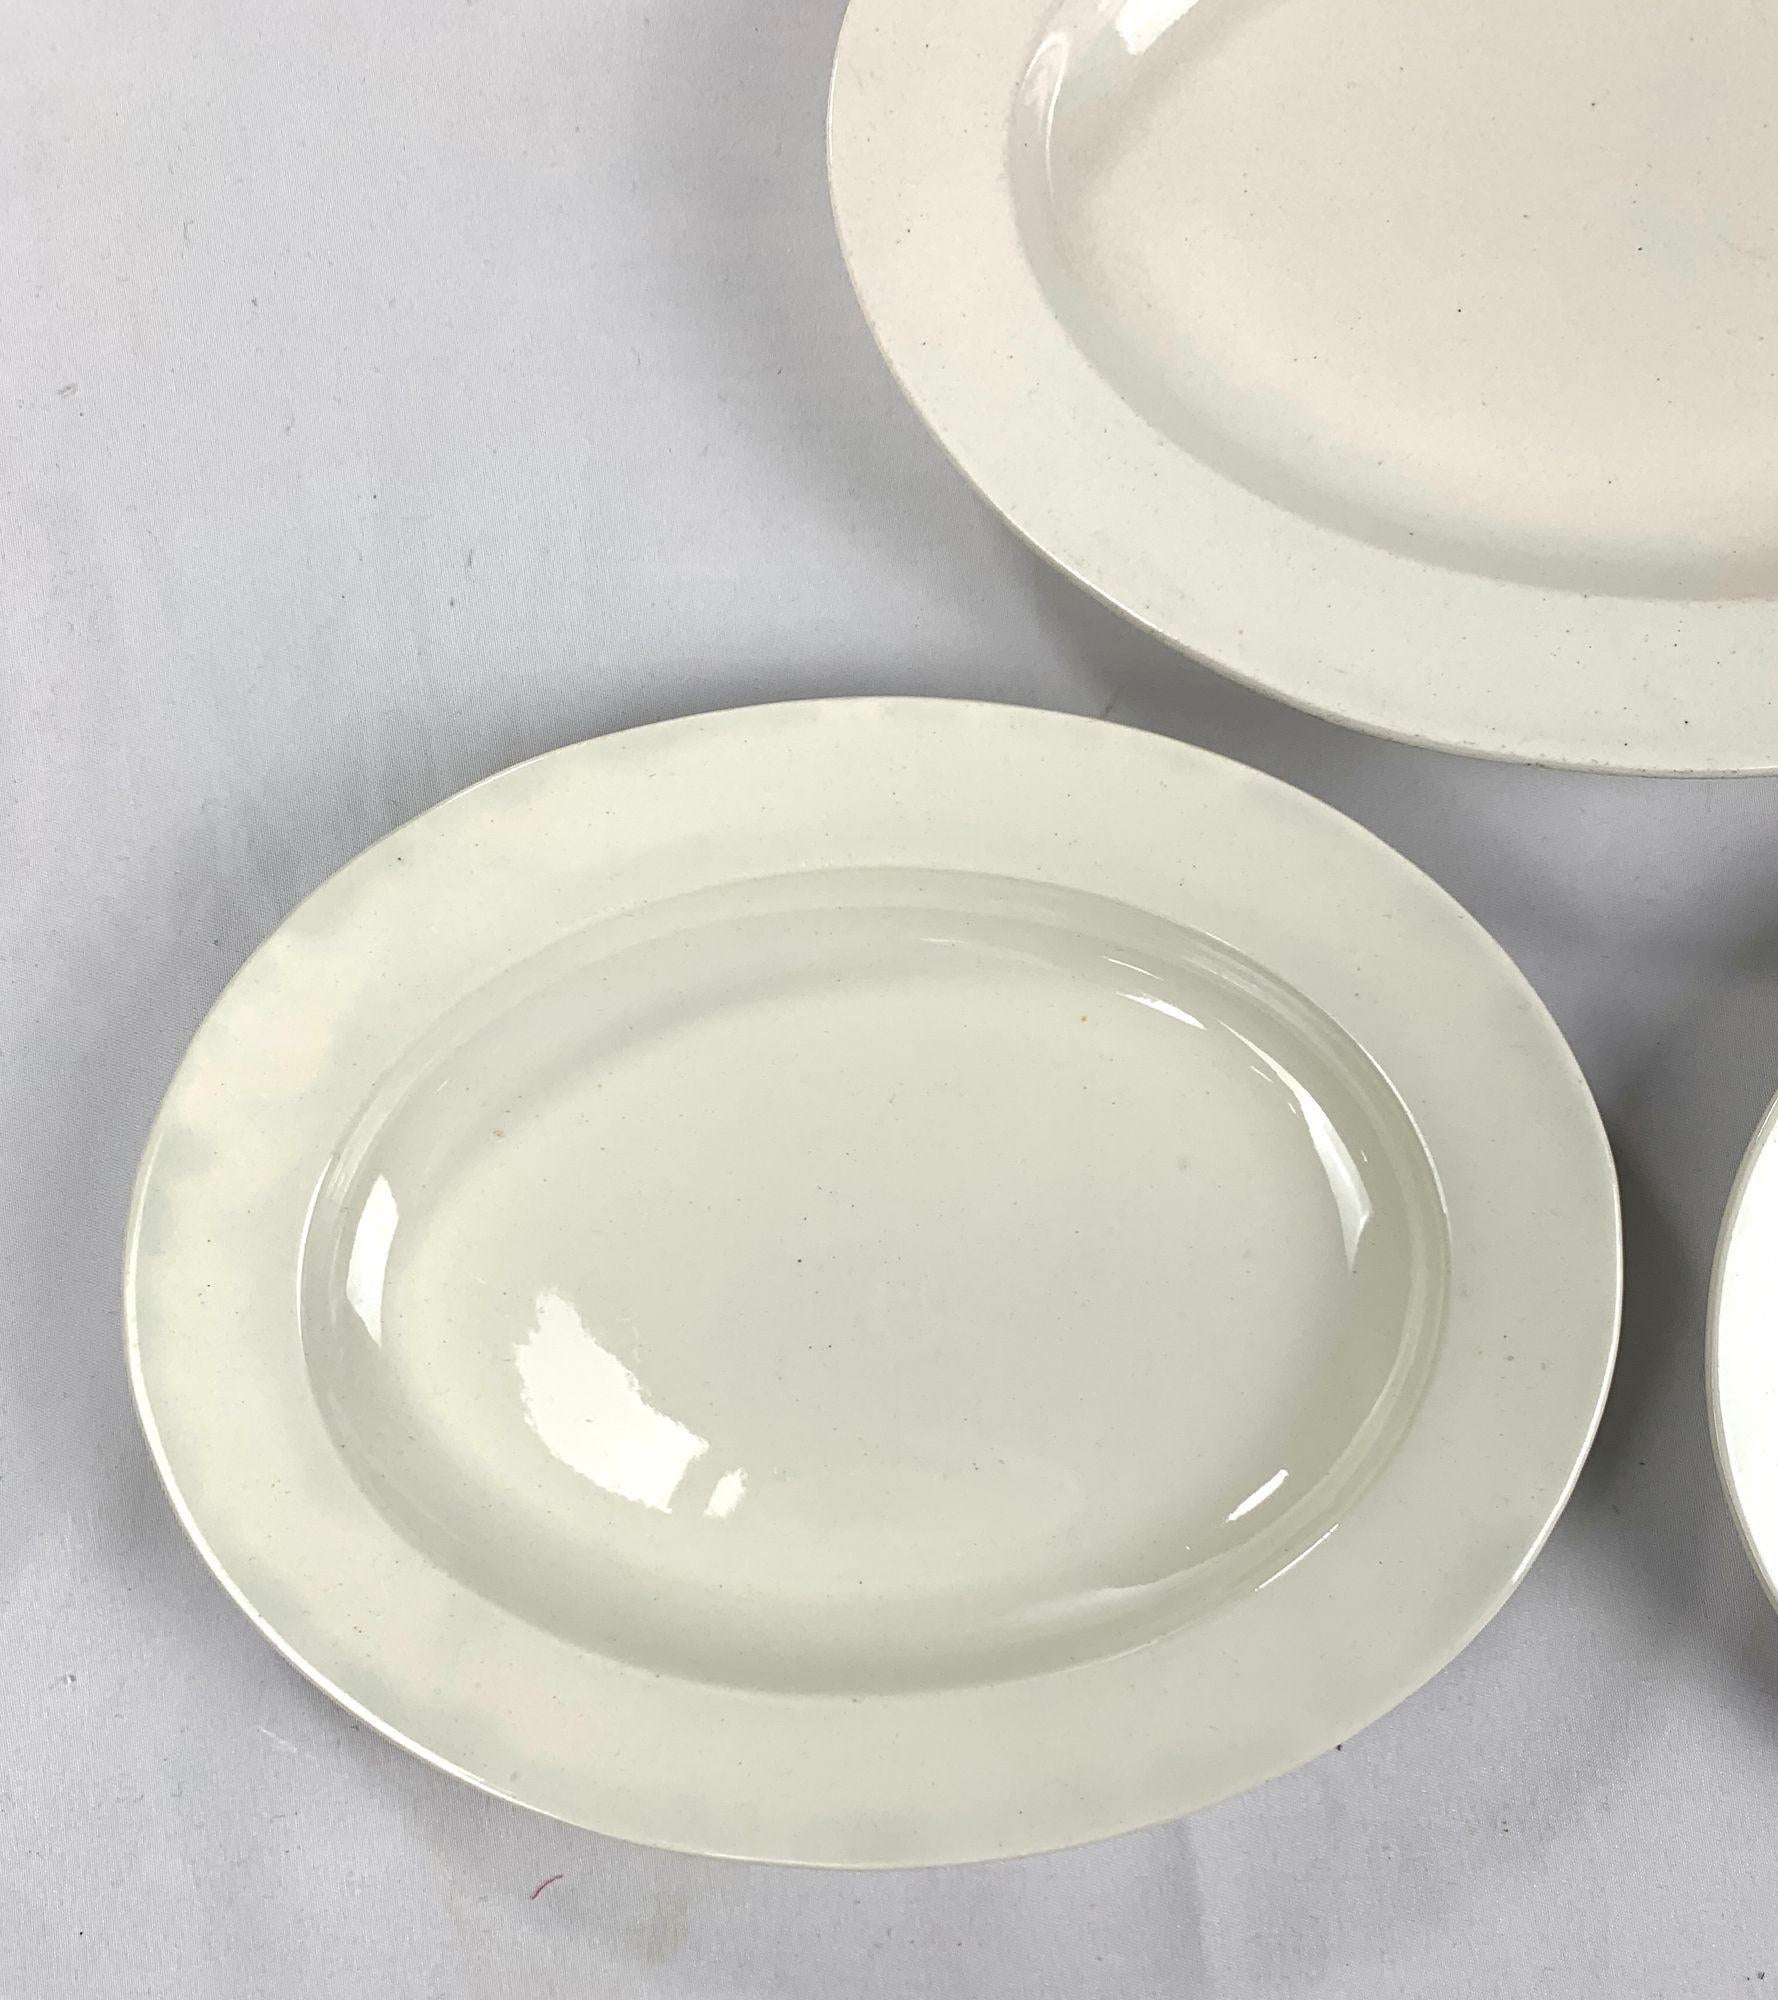 Fabriqué par Wedgwood en Angleterre vers 1830, ce groupe de trois plats ovales est une jolie vaisselle à la crème au design simple et élégant.
Le creamware est une faïence raffinée de couleur crème.
Il a été créé au milieu des années 1700 par les